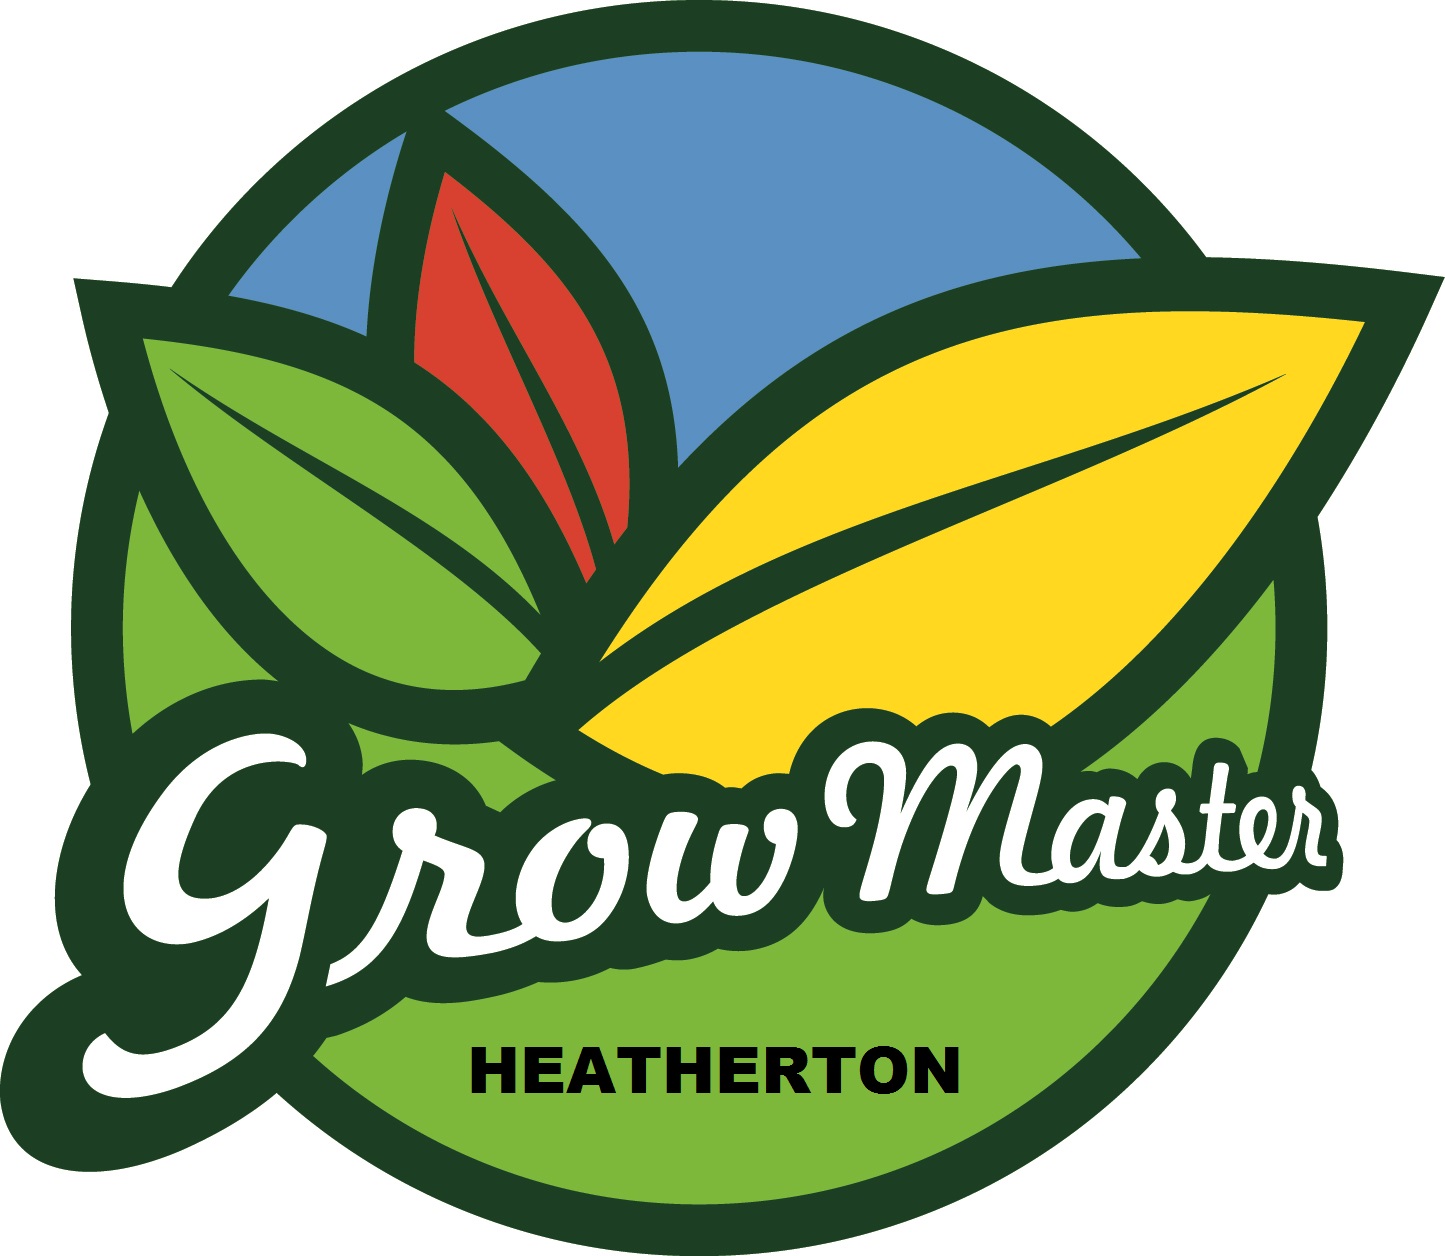 Grow Master Heatherton